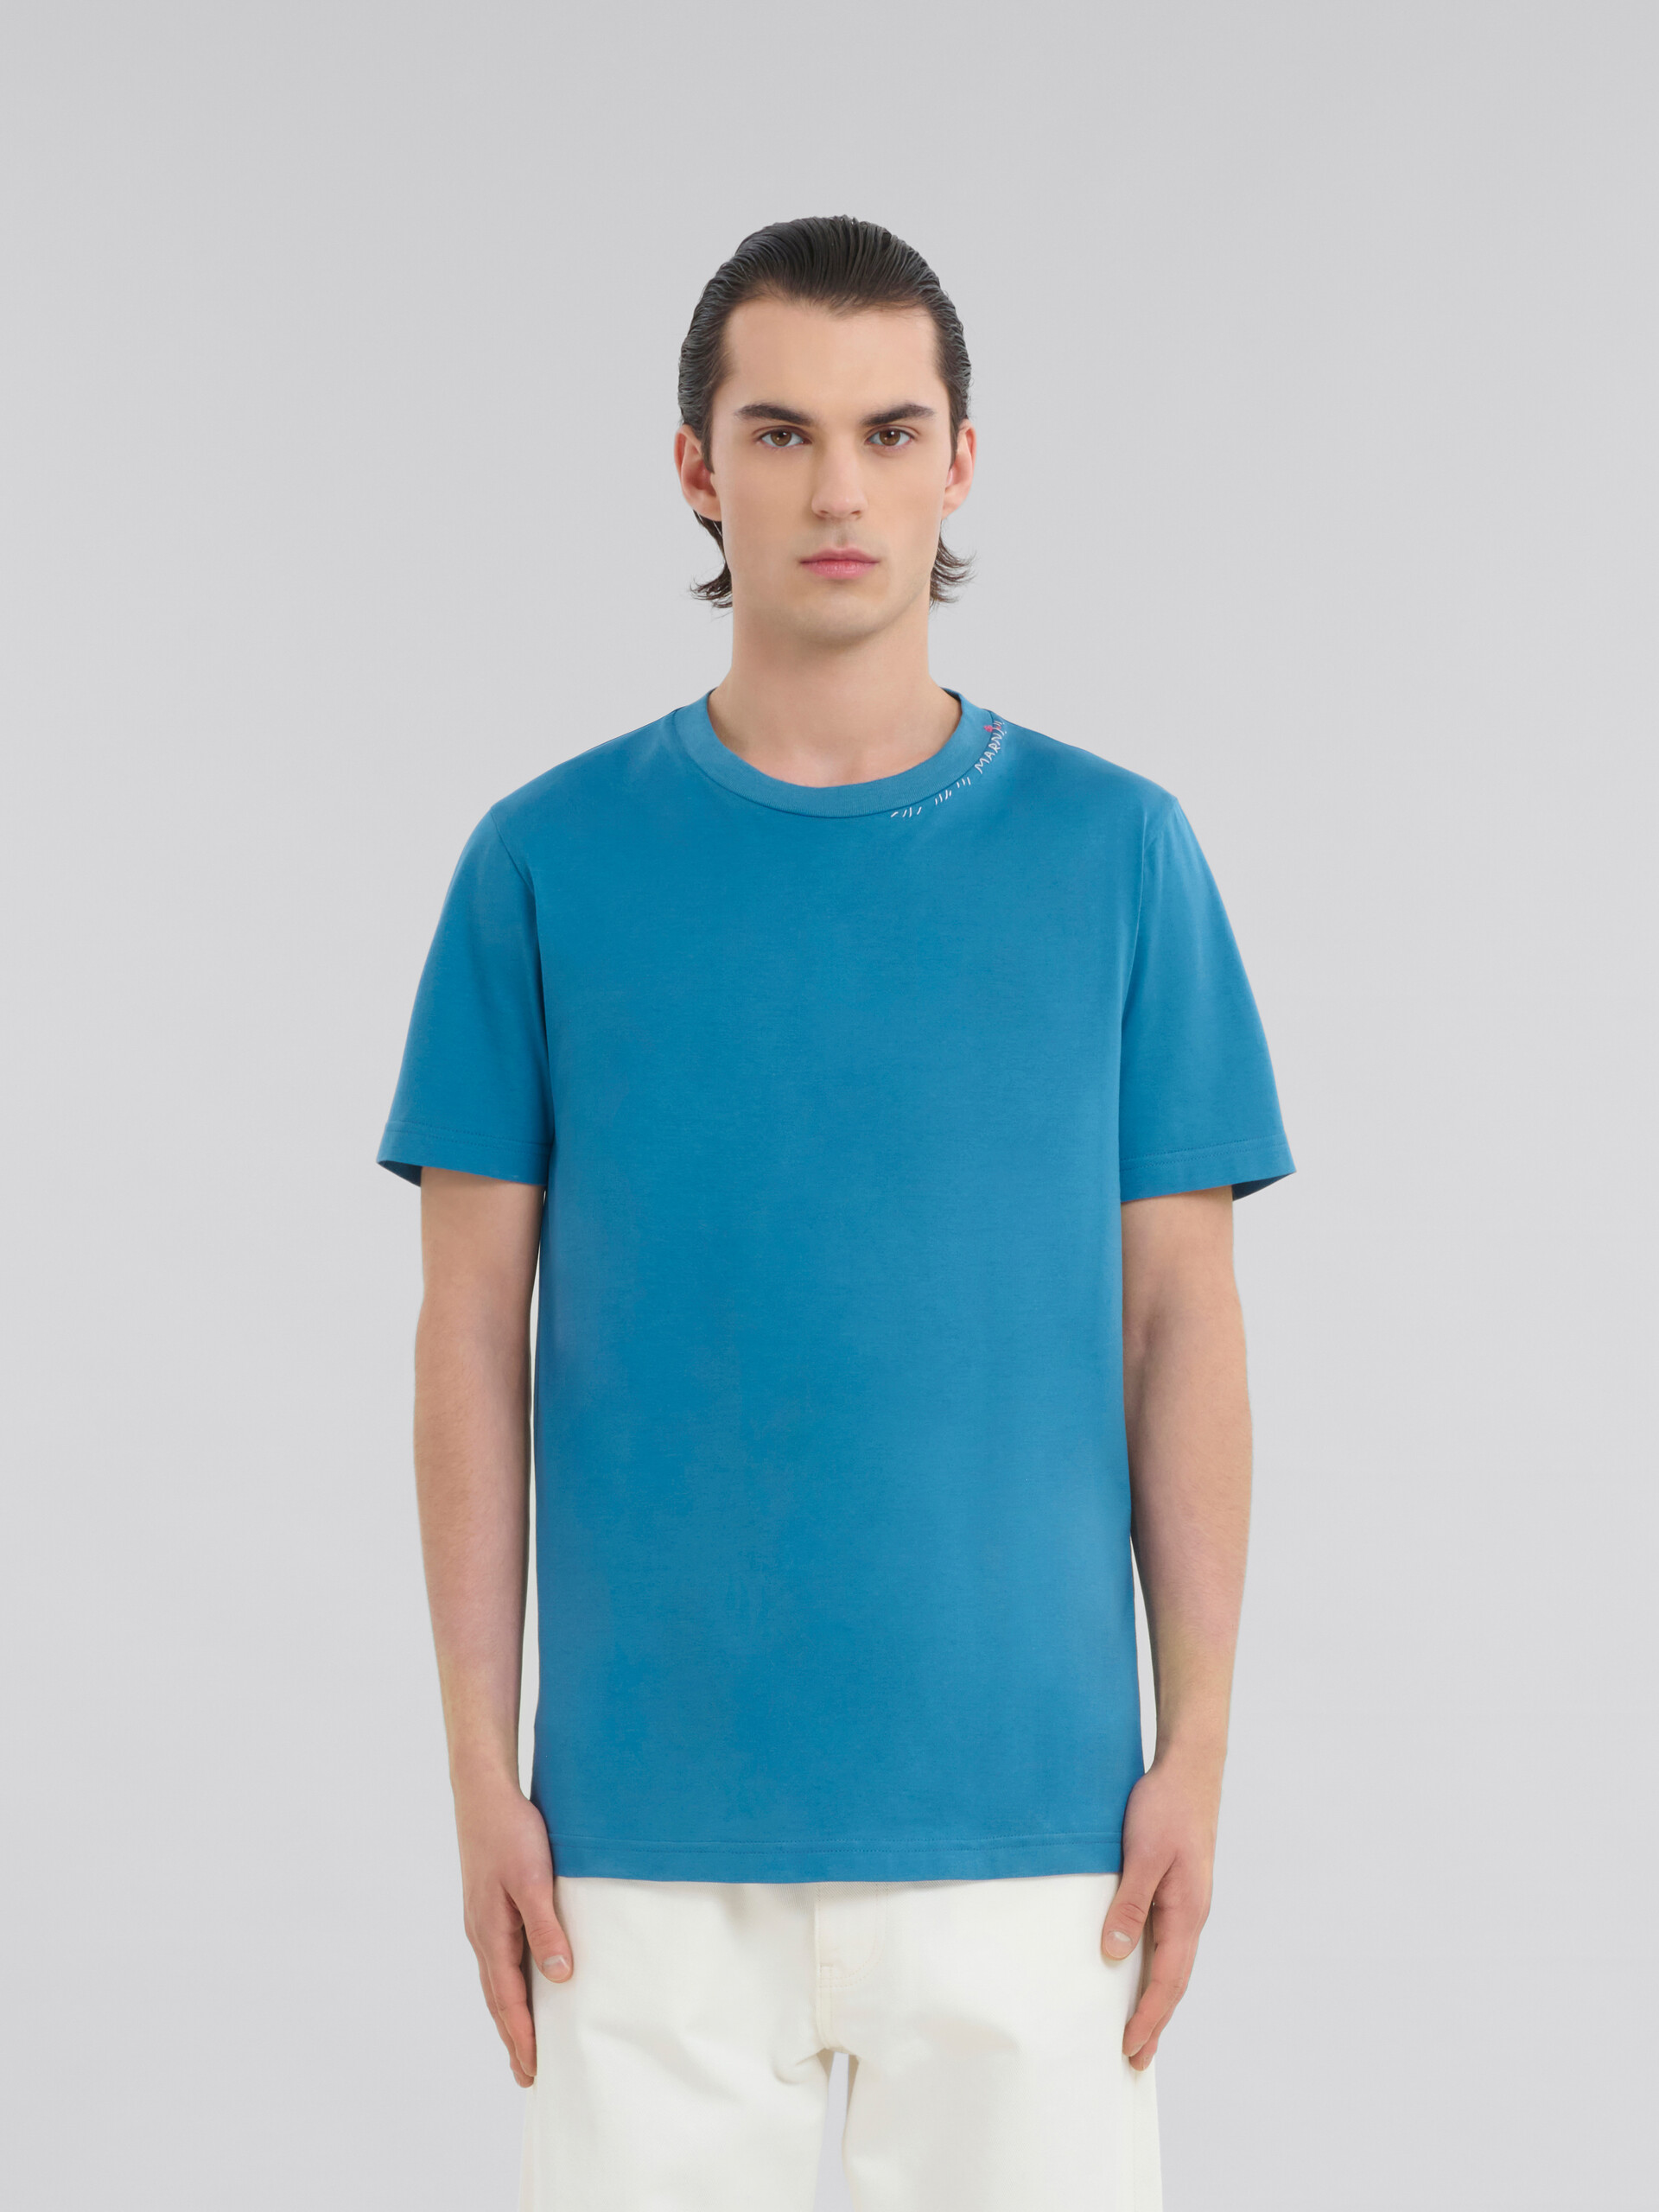 ブルー バック フラワープリント コットン製Tシャツ - Tシャツ - Image 2